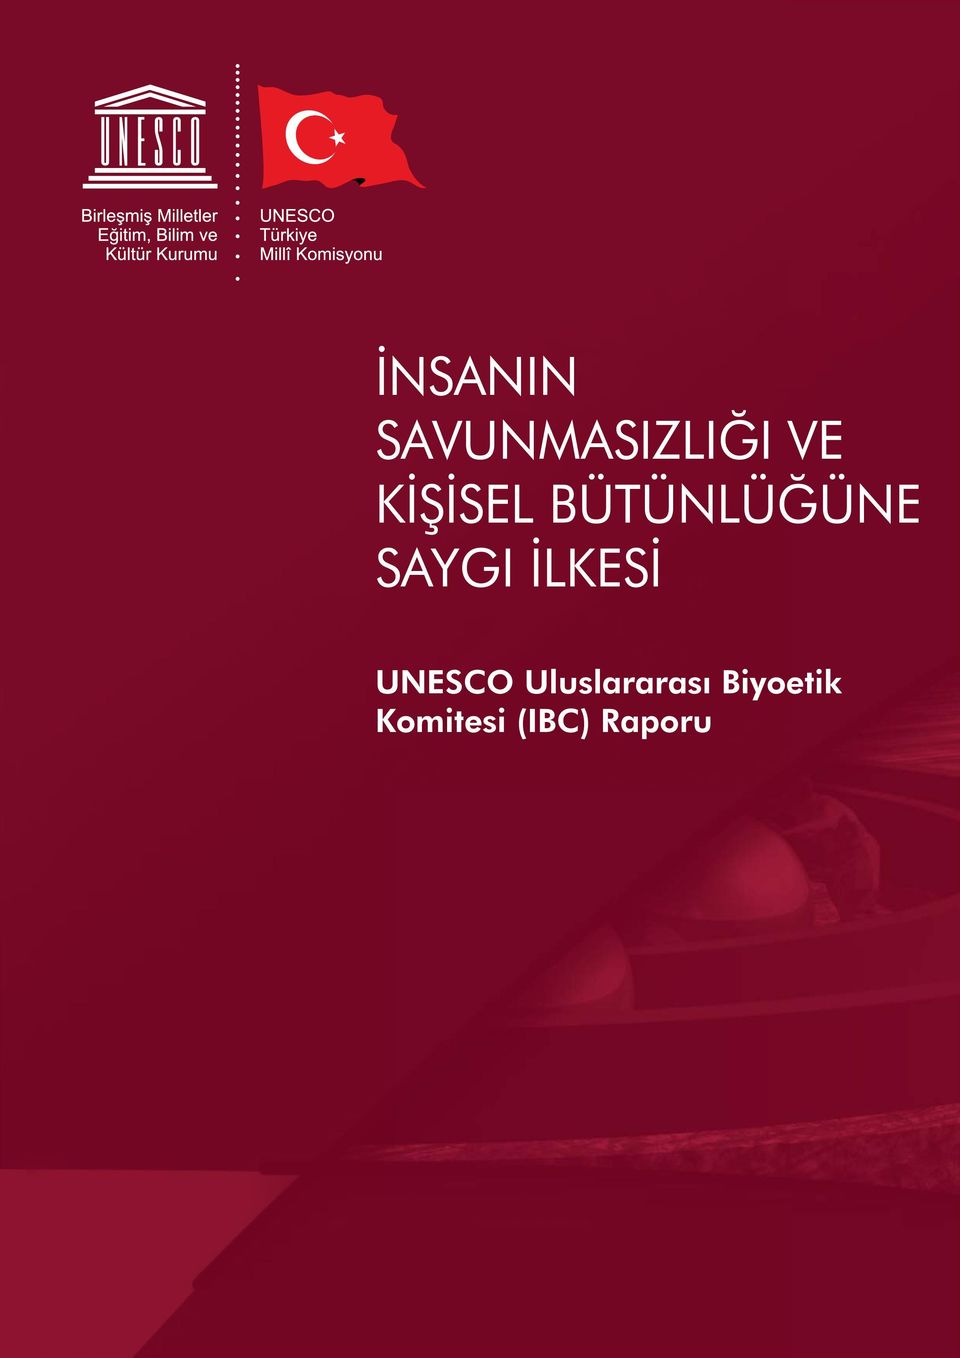 İLKESİ UNESCO Uluslararası